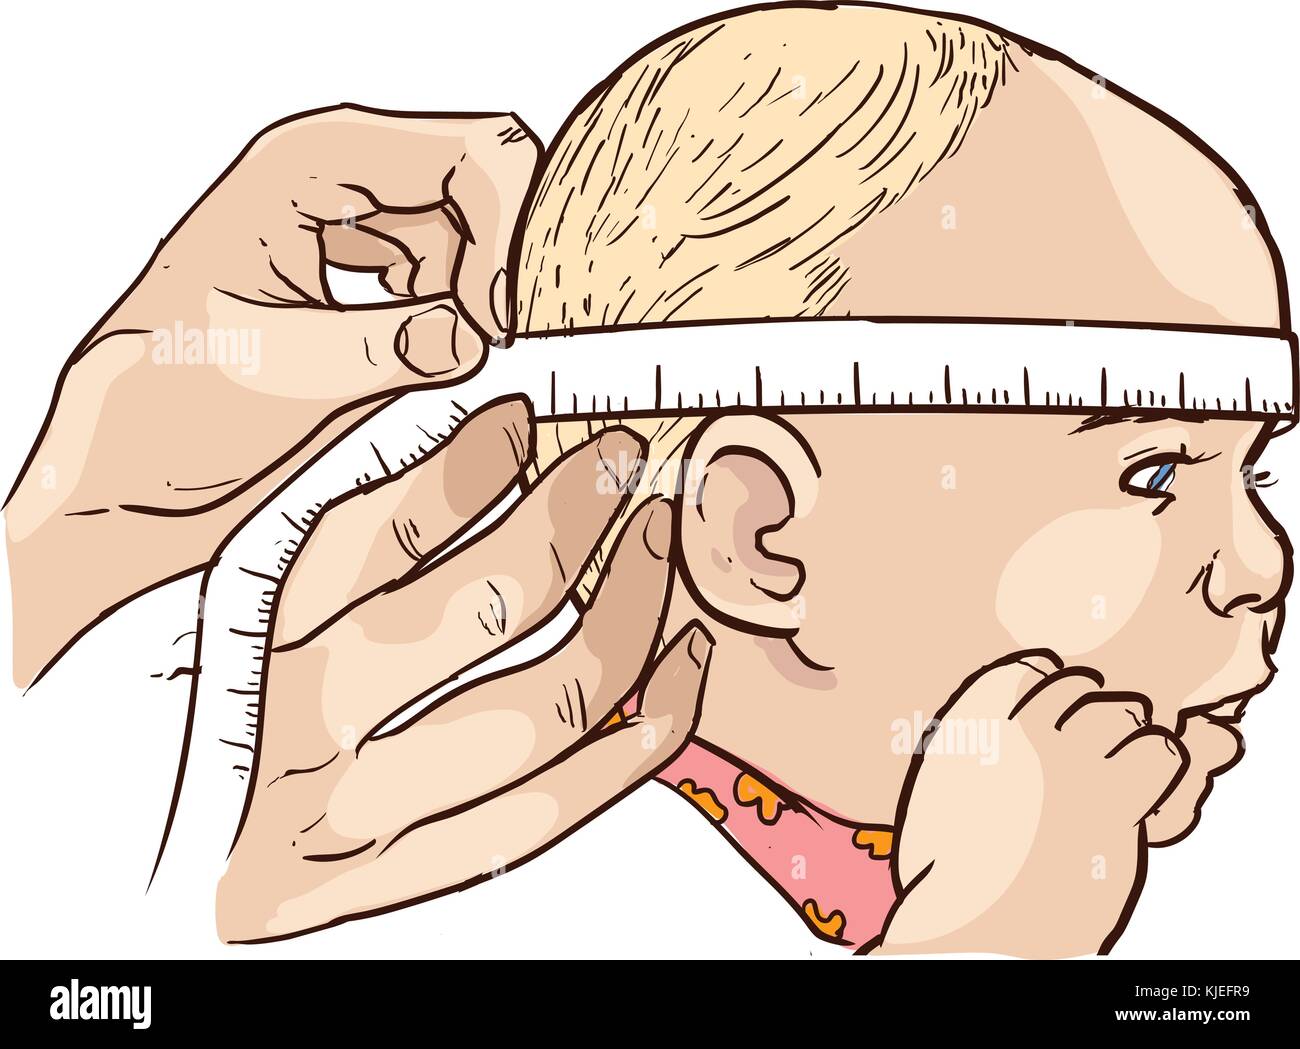 Большая окружность головы. Измерение окружности головы новорожденного. Измерение окружности головы алгоритм. Измерение окружности головы у детей алгоритм. Измерение окружности головы у детей до 1 года.